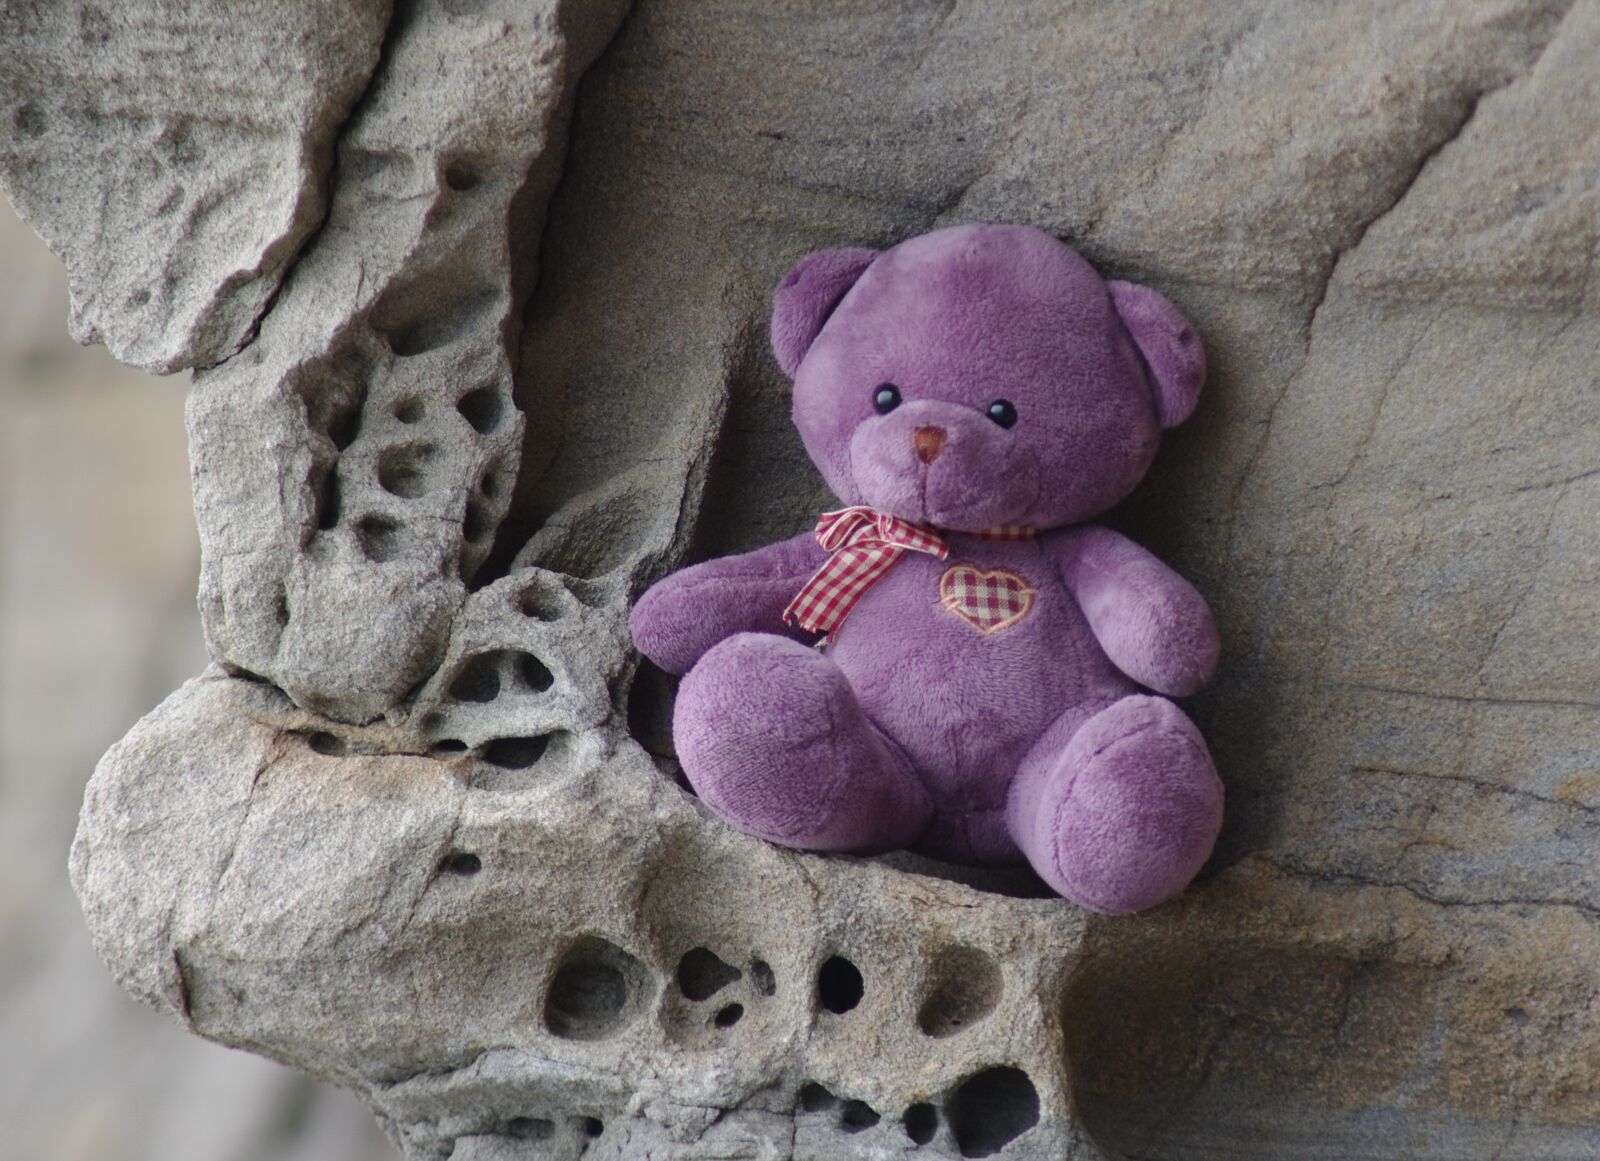 Pentax K-x sample photo. Teddy bear, birthday, expectation photography